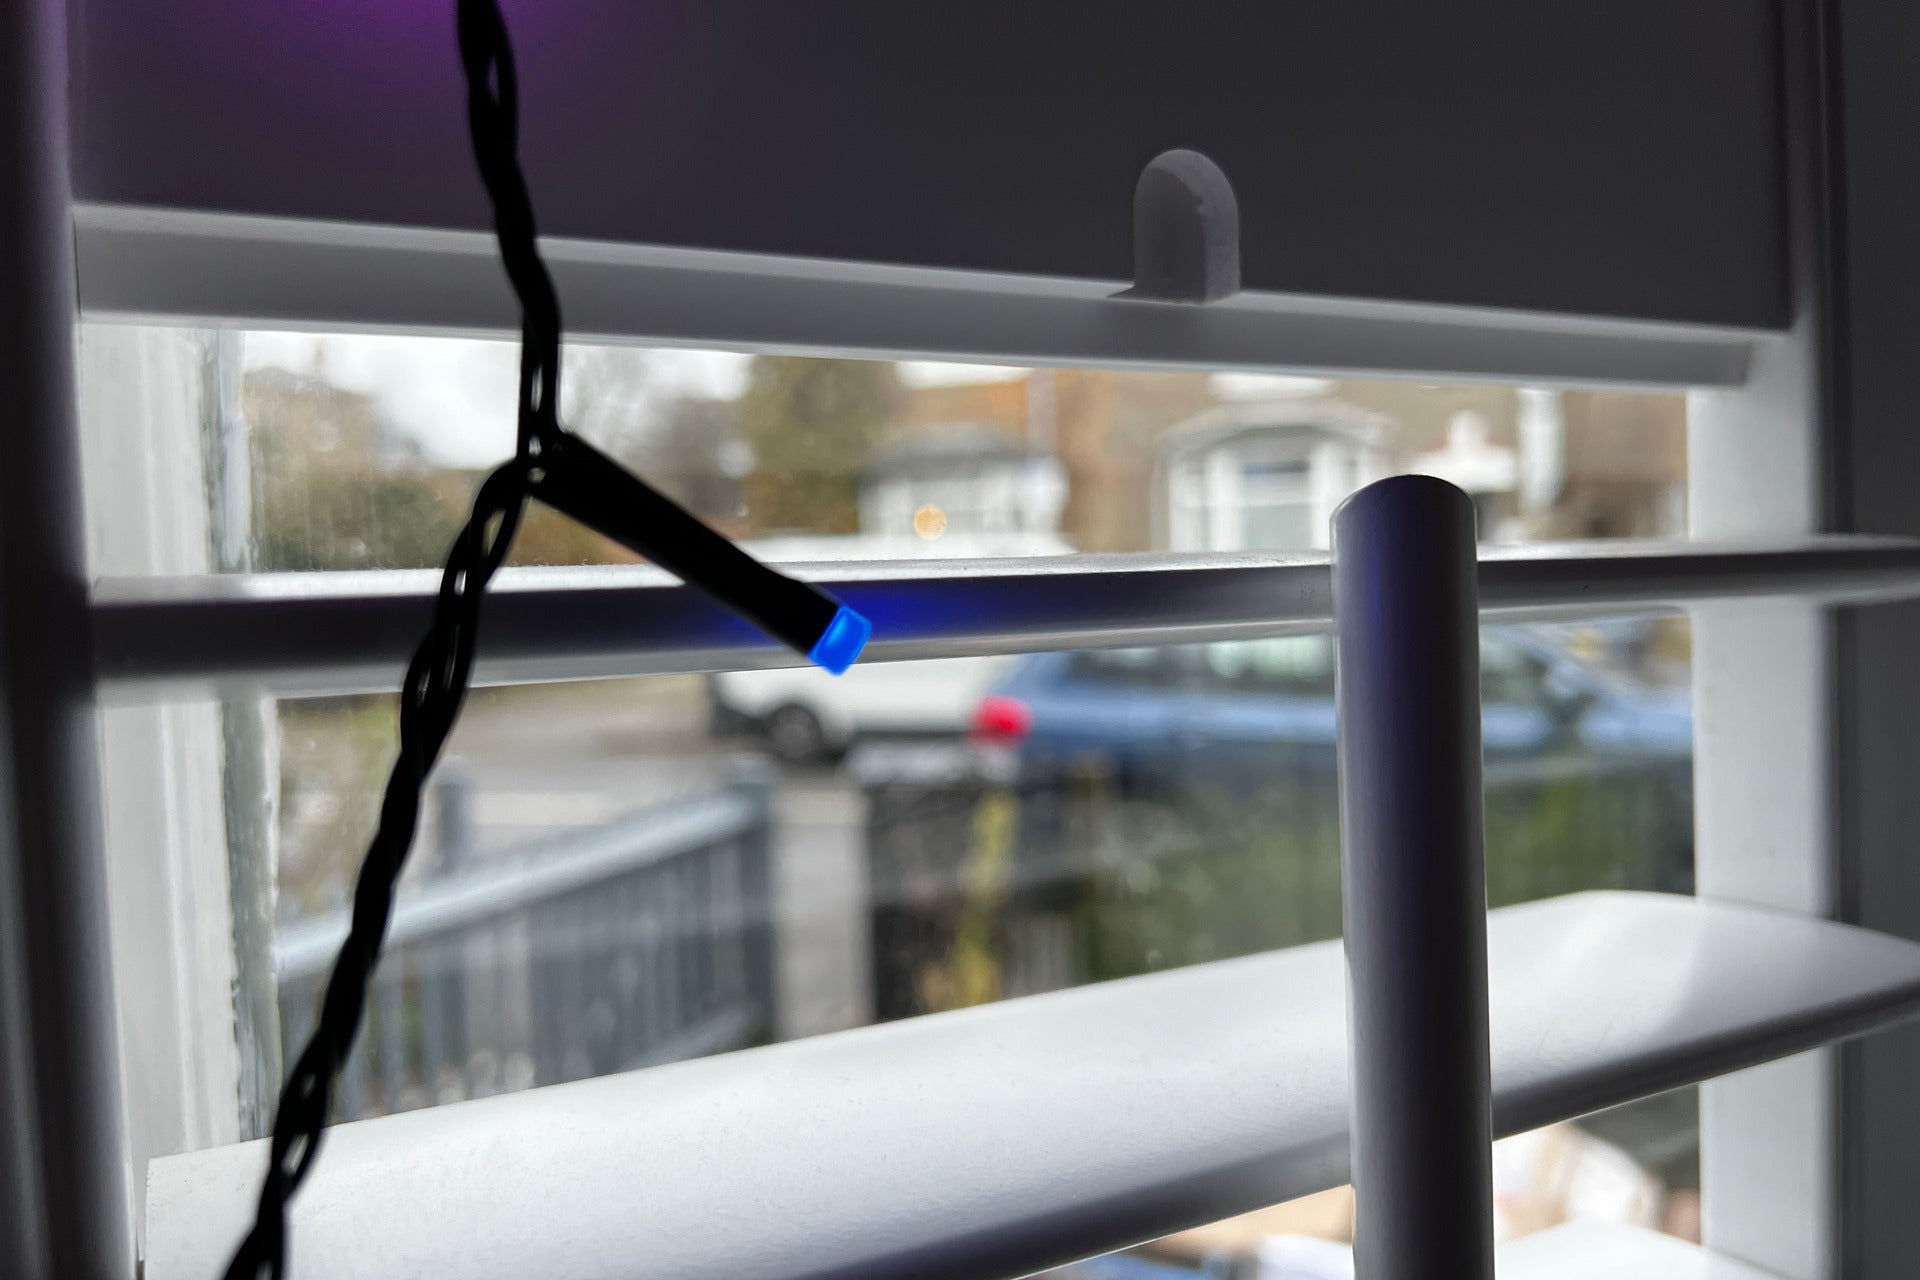 Installation de guirlandes lumineuses intelligentes pour les fêtes Nanoleaf Matter